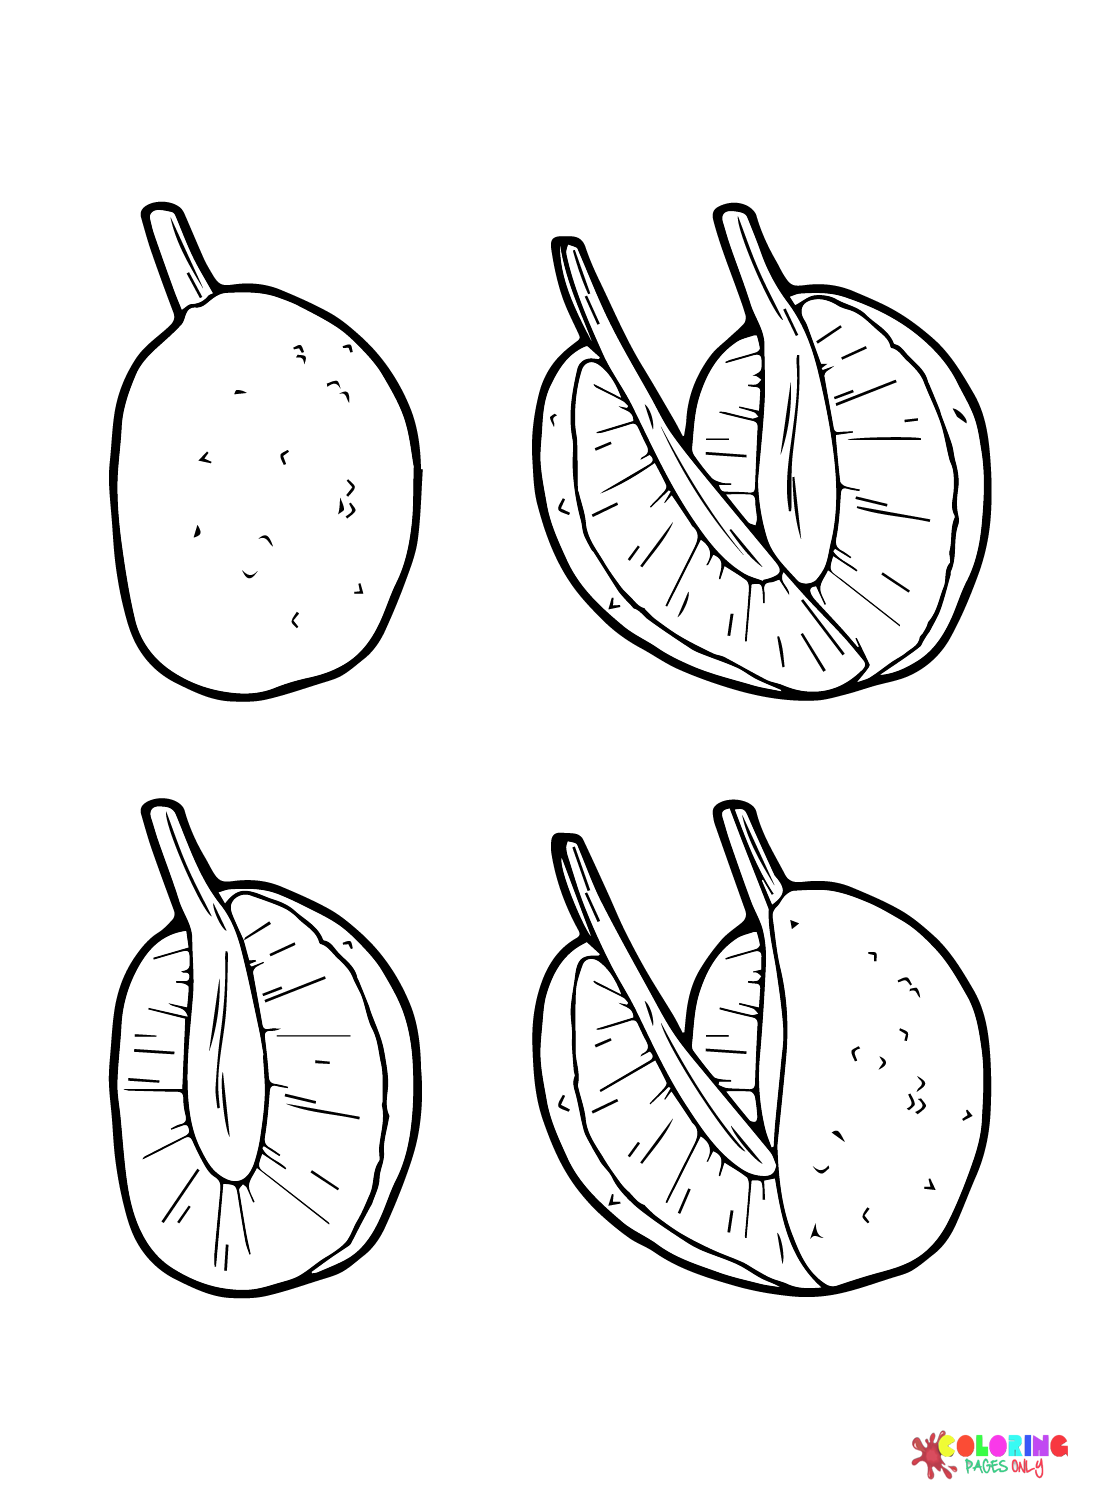 Fruit à pain pour les enfants de Breadfruit